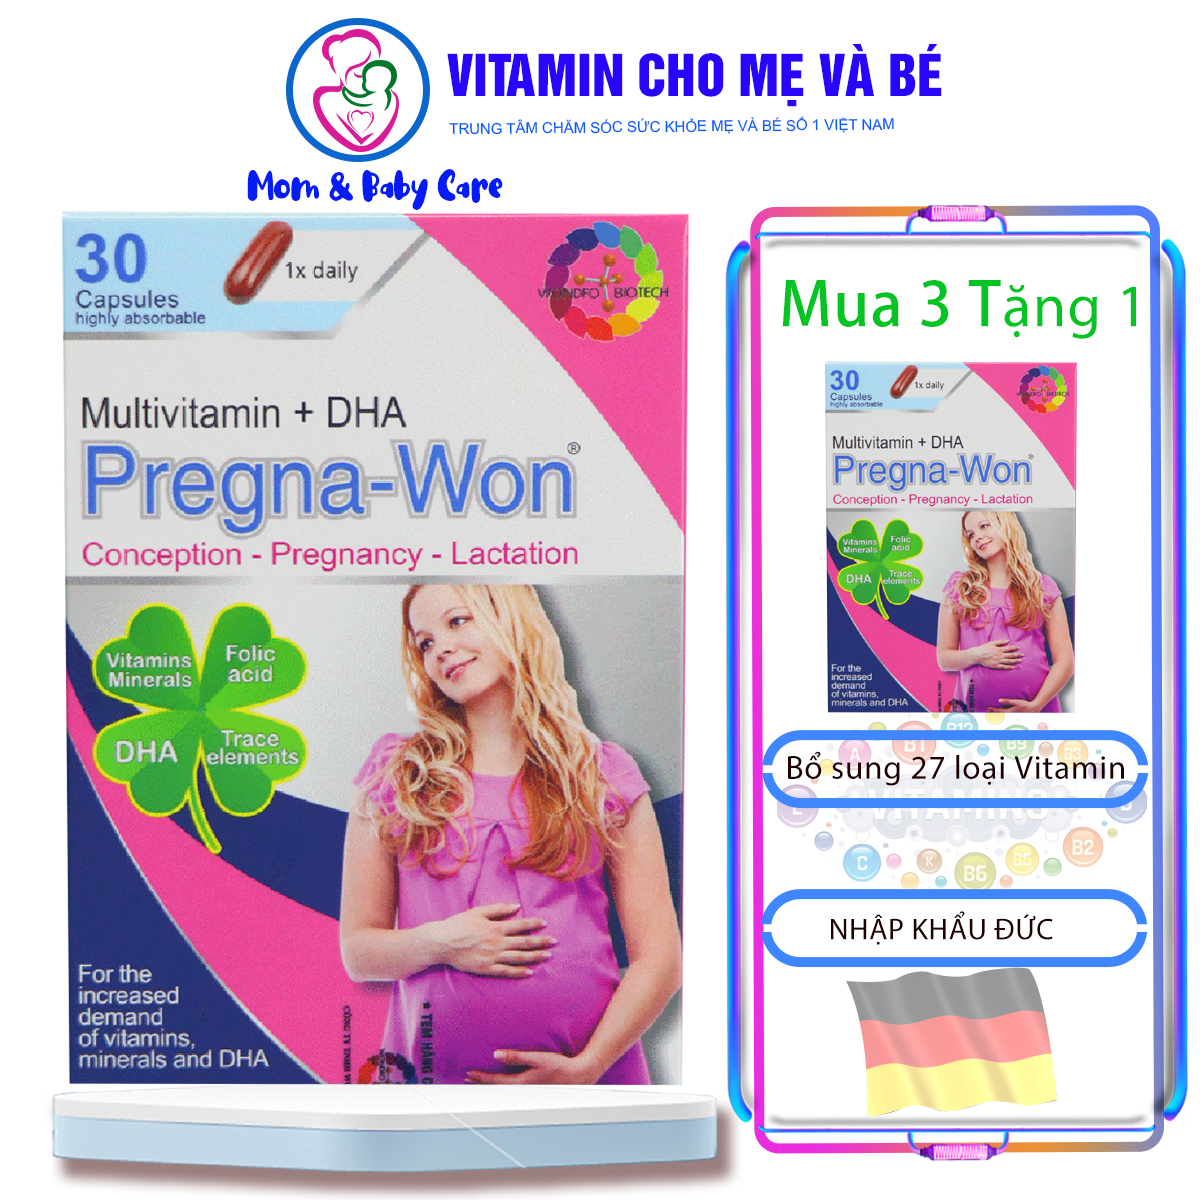 [GIẢM 50] Viên uống 27 loại Vitamin Cho Bà Bầu Pregna-Won Multivitamin + DHA hộp 2 vỉ x 15 viên nang mềm - Nhập khẩu Đức chính hãng